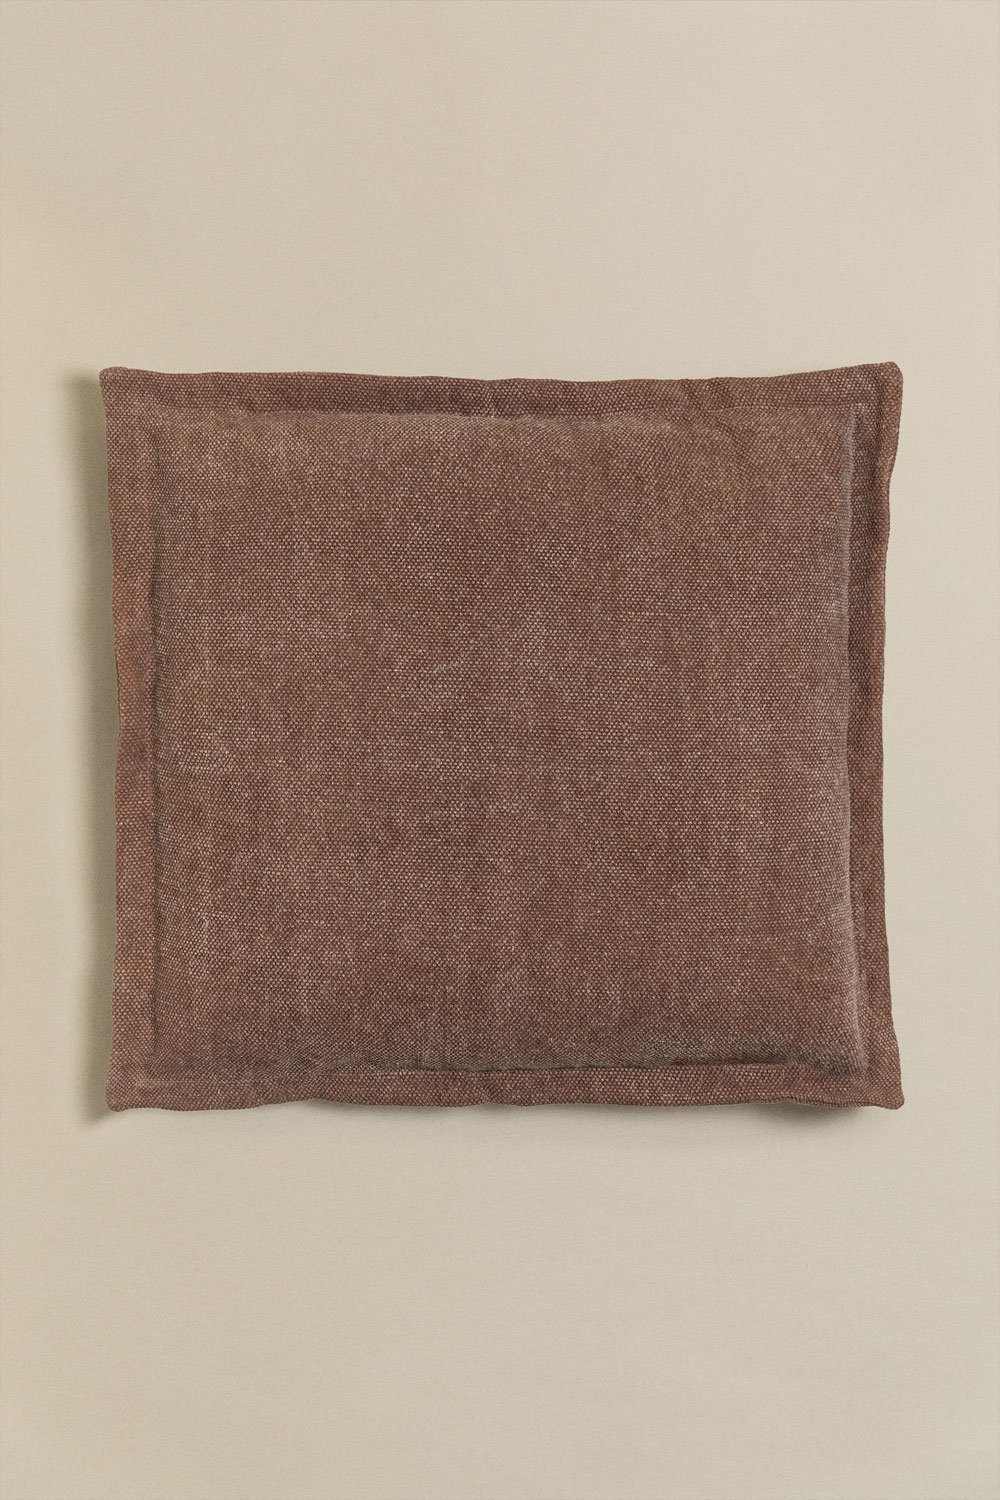 Almofada Quadrada de Algodão (60x60 cm) Karzem, imagem de galeria 1